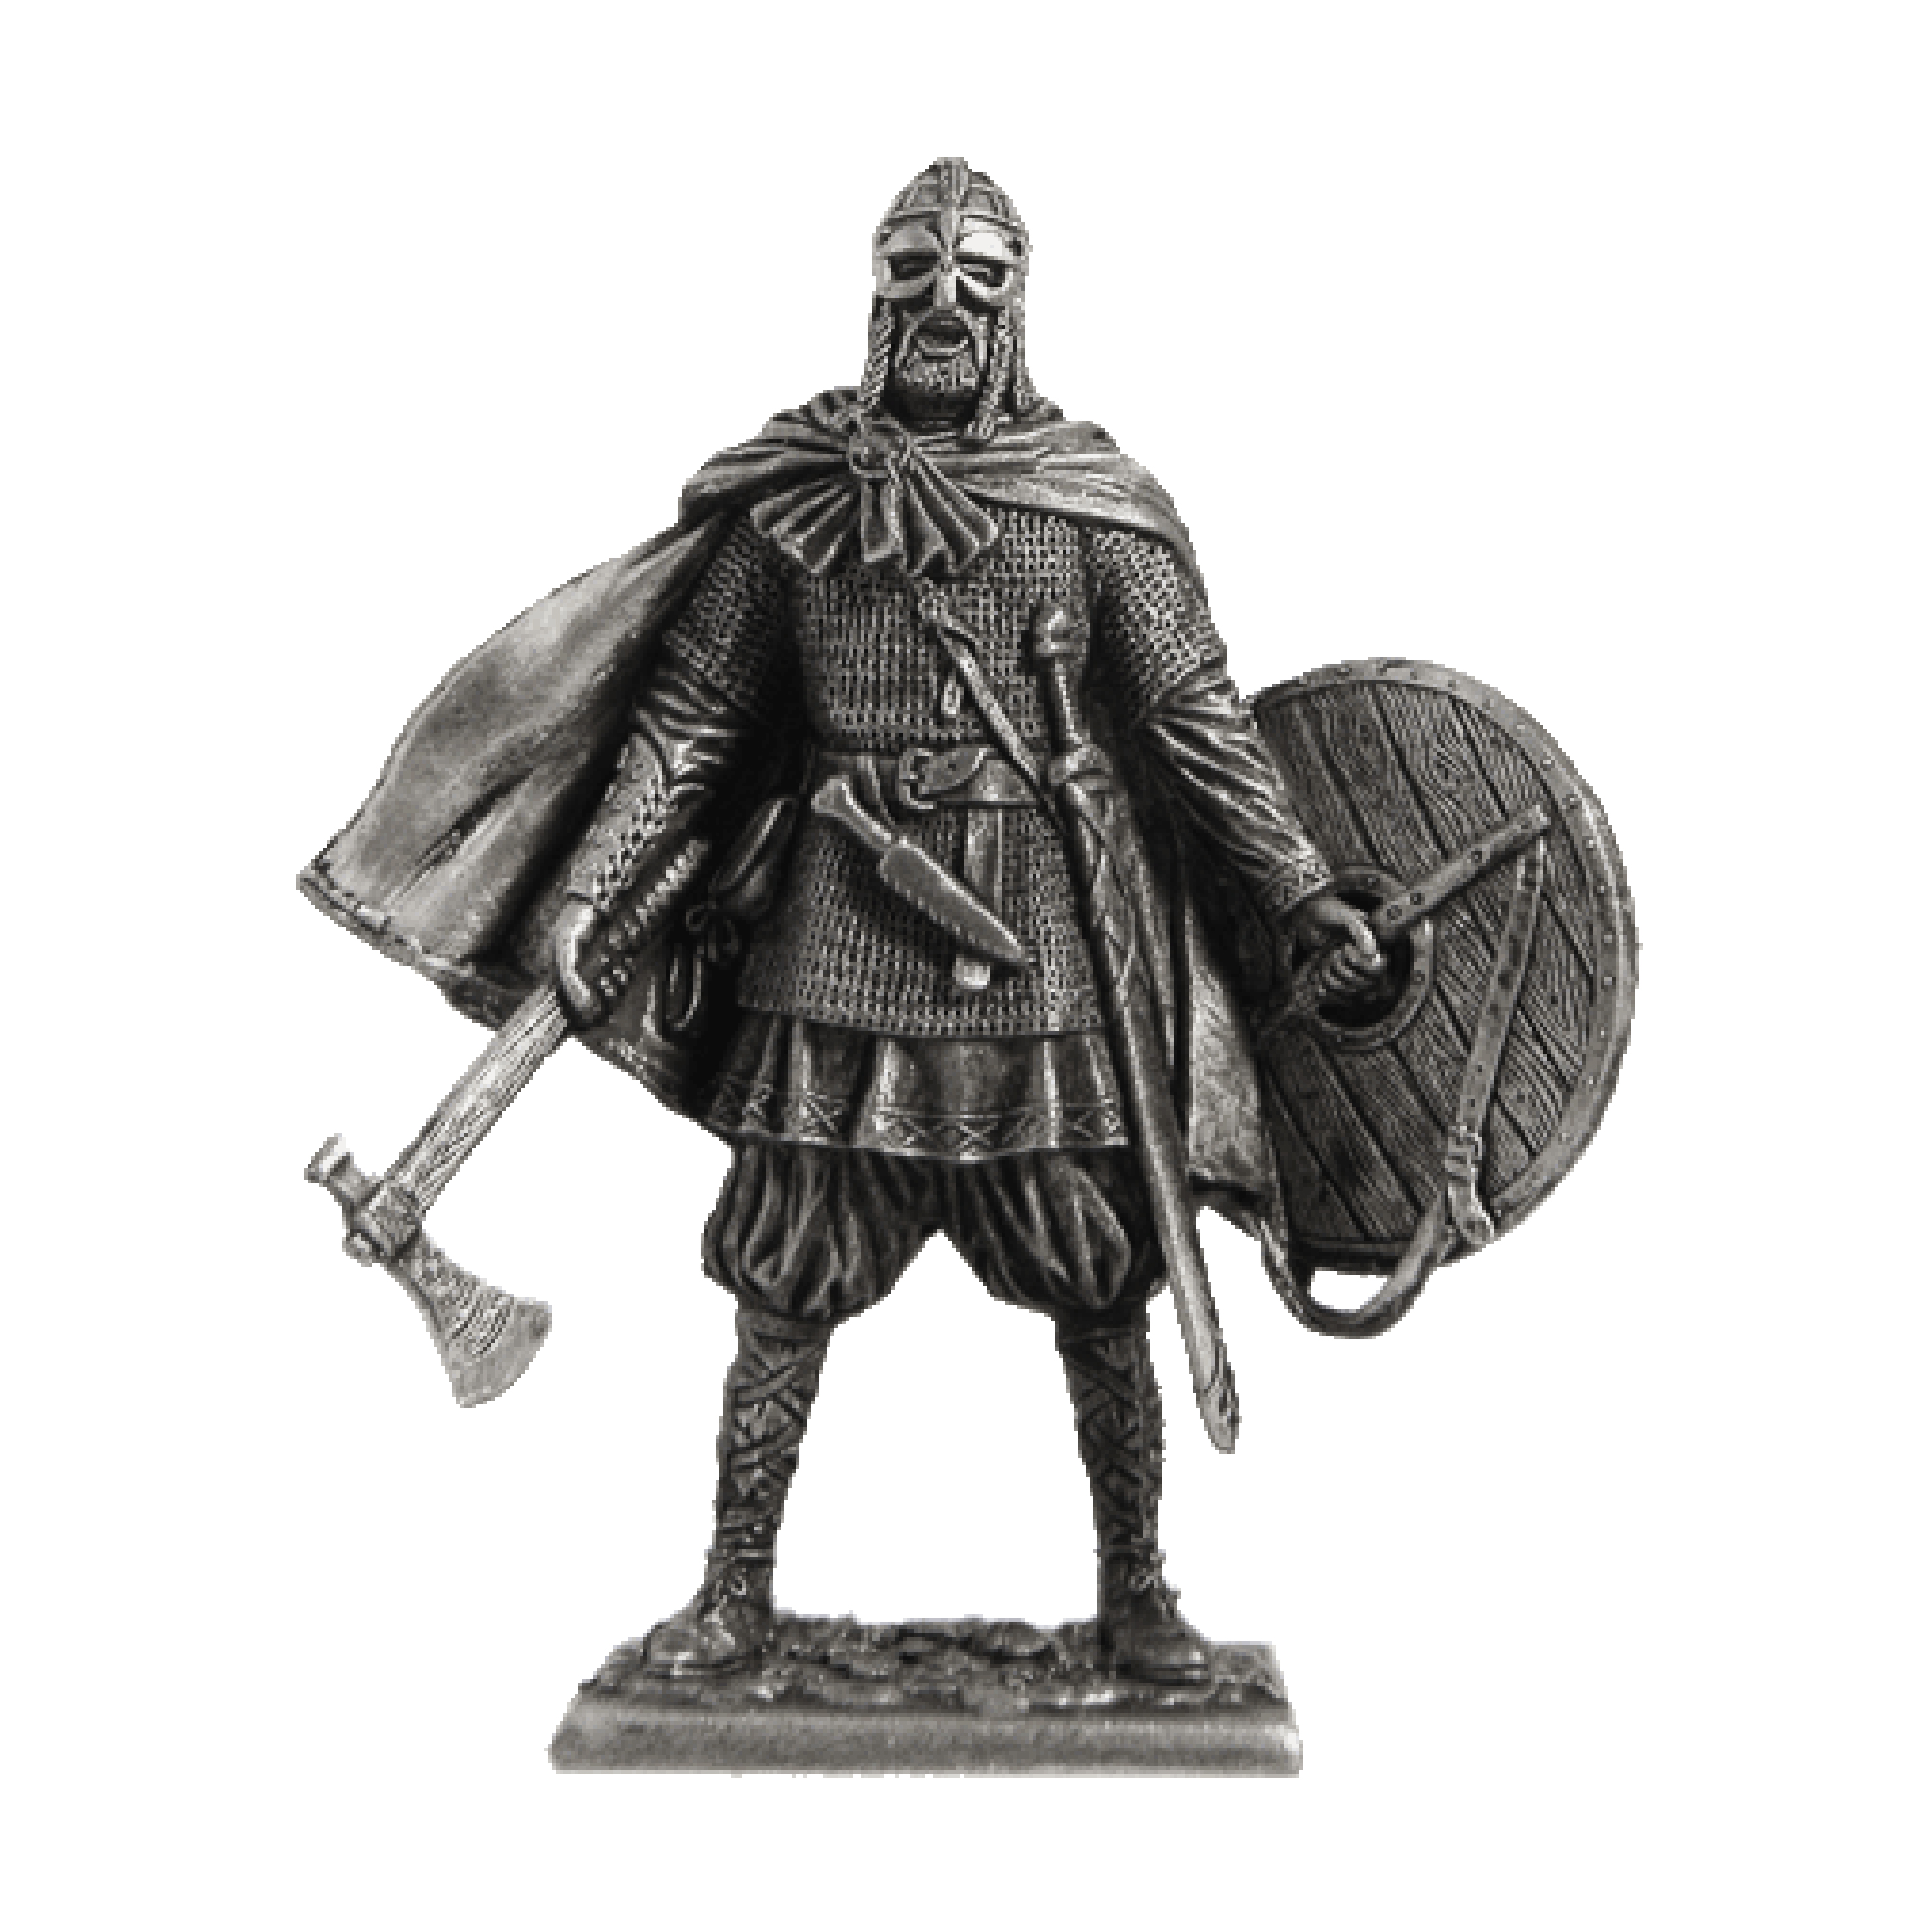 Viking, 10th century